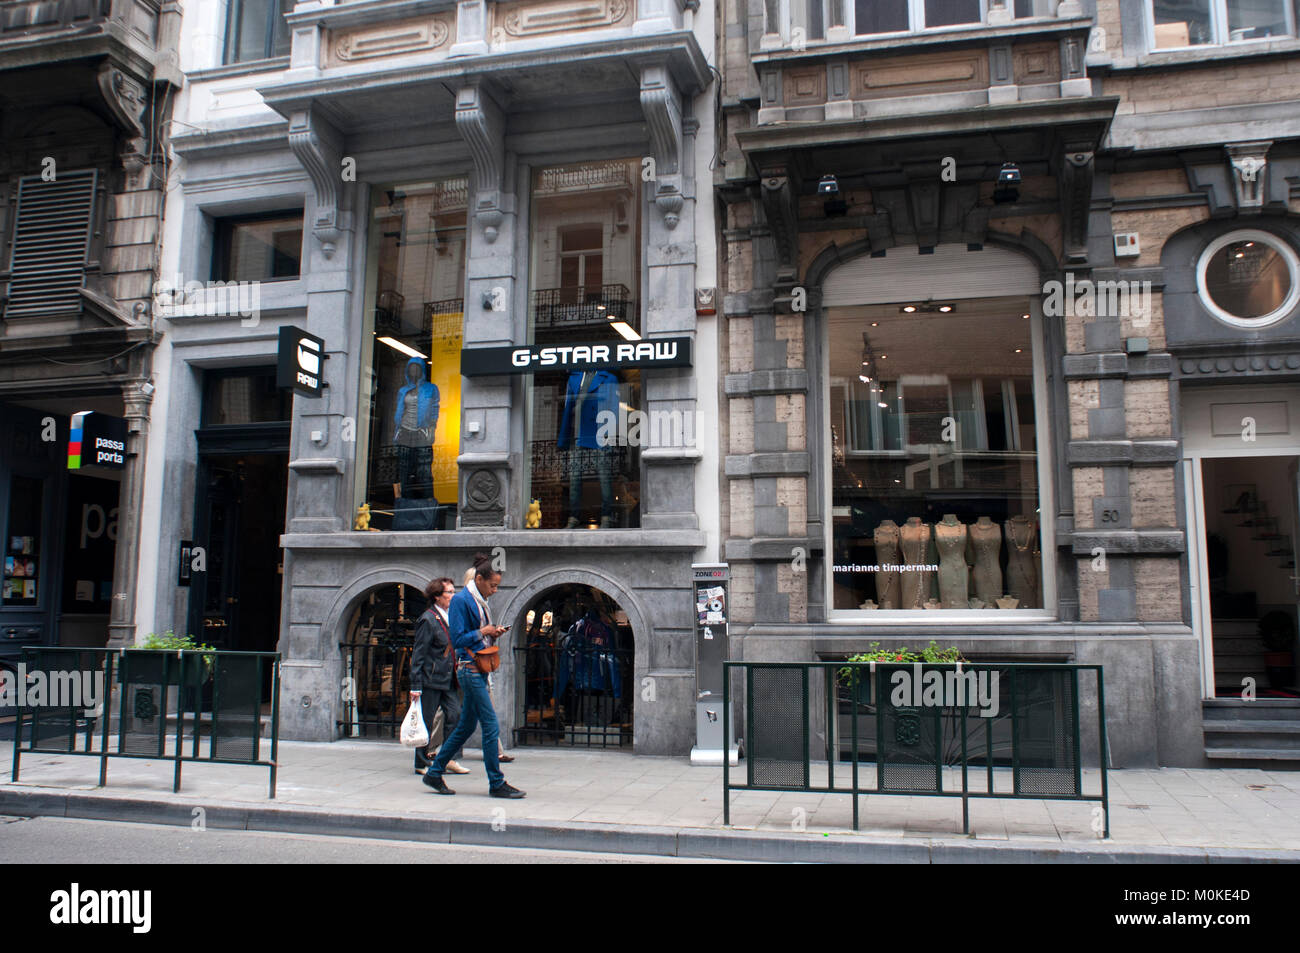 G-Star Raw et l'autre des boutiques de mode sur la Rue Antoine Dansaert,  Bruxelles, Belgique. Le royaume de boutiques de luxe à Bruxelles a un nom :  l'Avenue Louise Photo Stock -